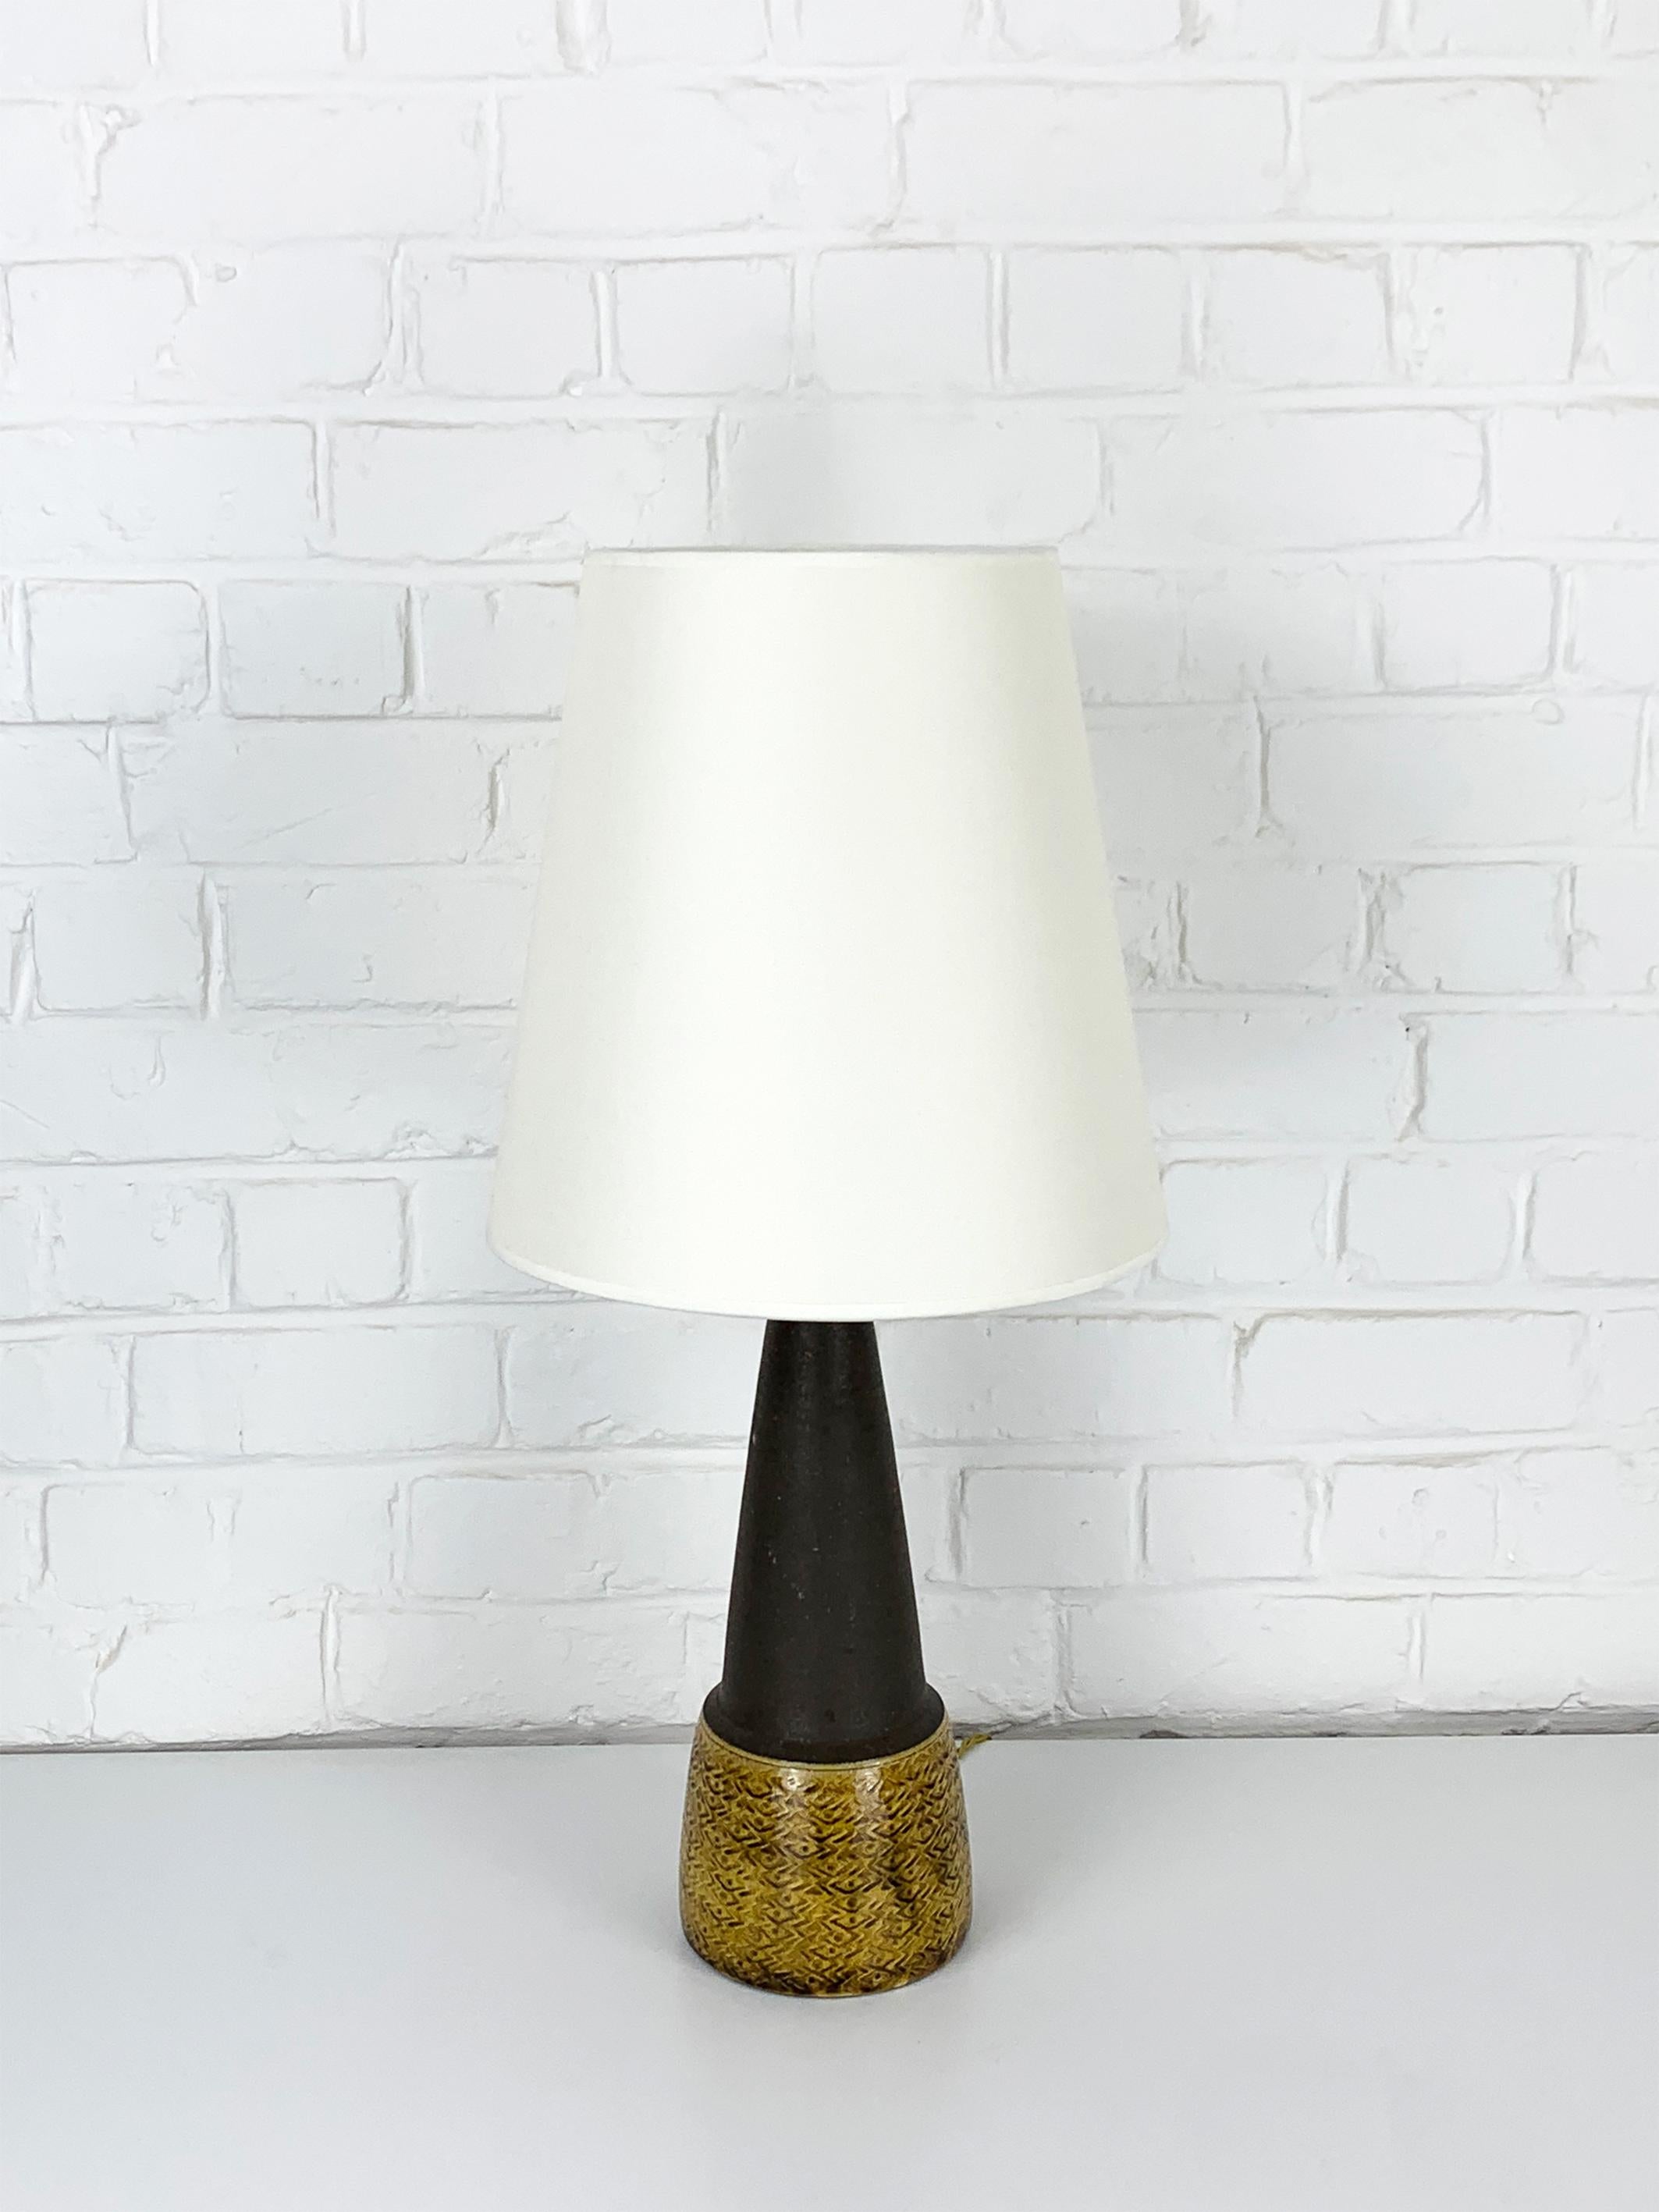 20th Century Scandinavian Ceramic Table Lamp, Nils Kähler for HAK, Denmark For Sale